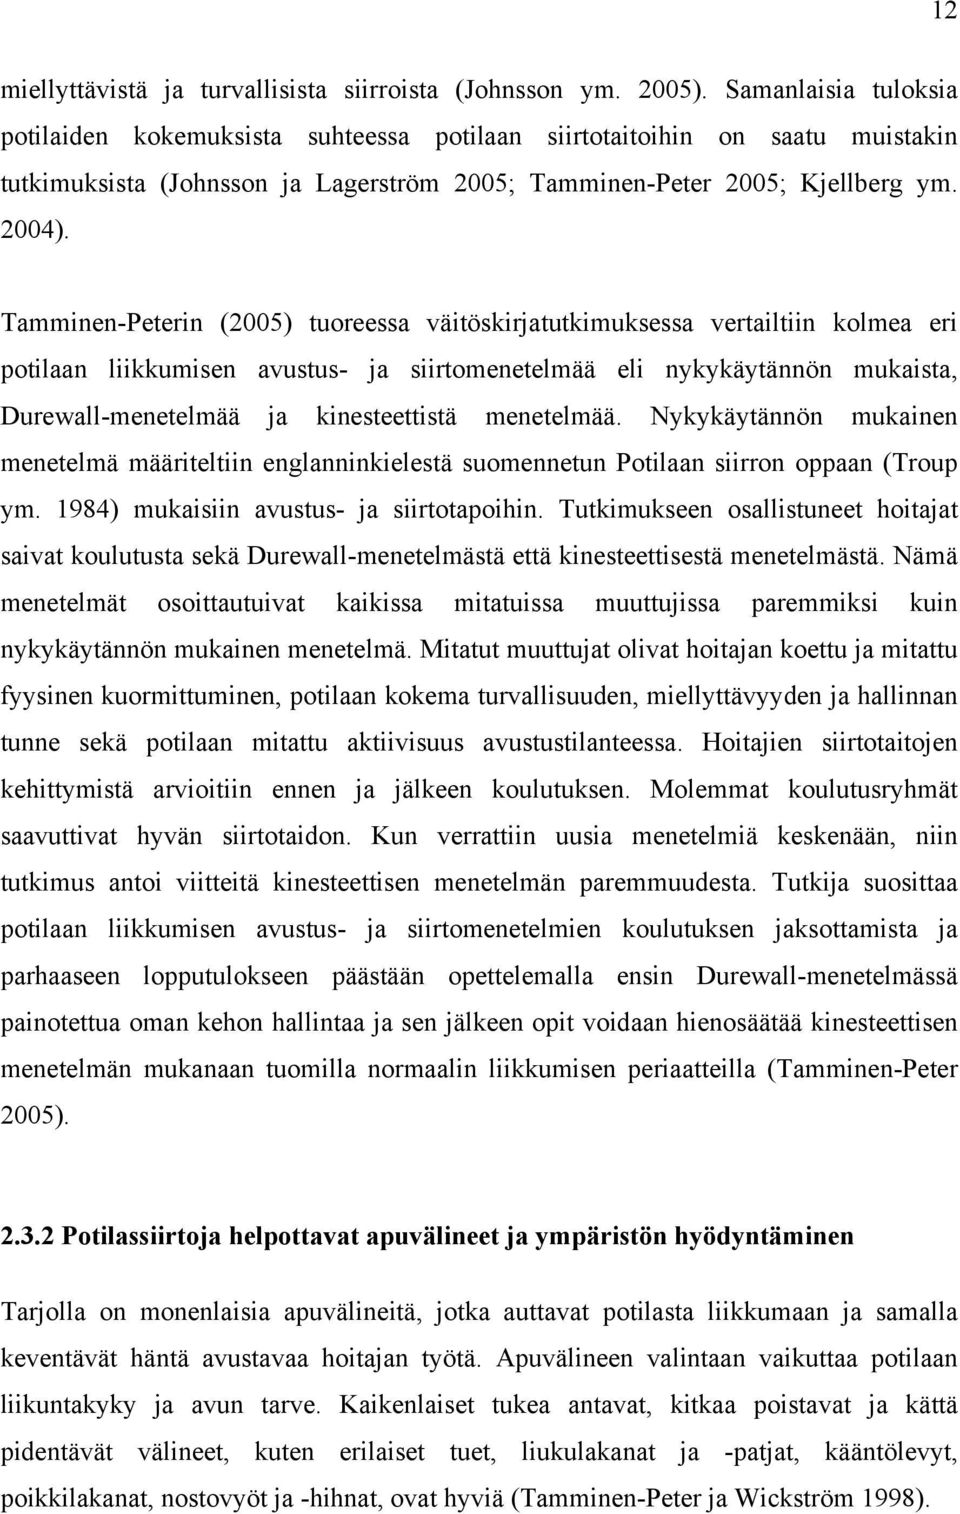 Tamminen-Peterin (2005) tuoreessa väitöskirjatutkimuksessa vertailtiin kolmea eri potilaan liikkumisen avustus- ja siirtomenetelmää eli nykykäytännön mukaista, Durewall-menetelmää ja kinesteettistä